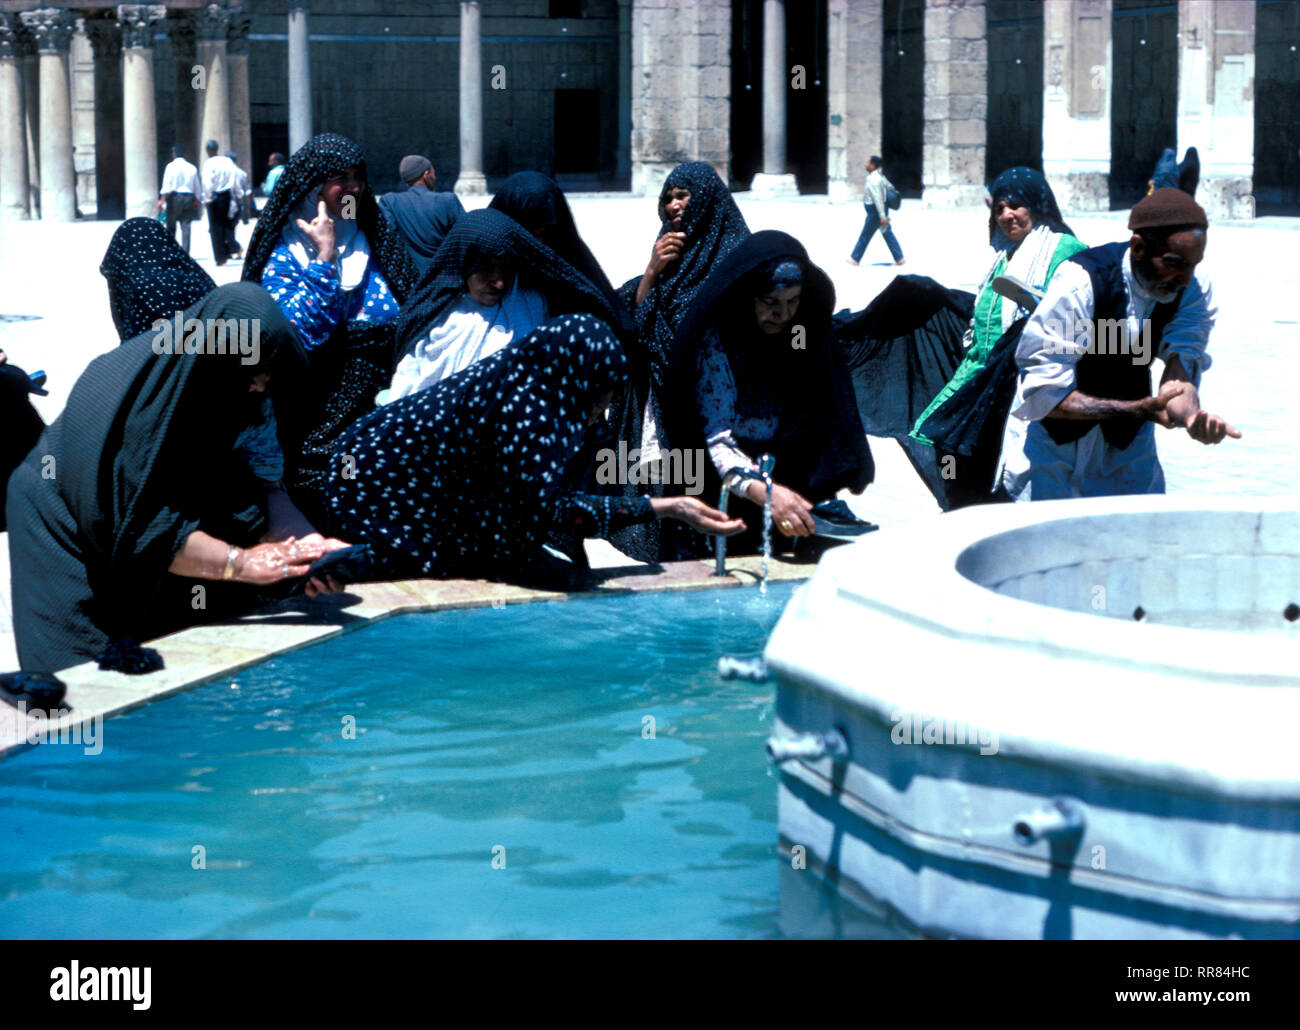 Pèlerins chiites qui se lavent dans le réservoir dans la cour de la mosquée Omeyyade à Damas en Syrie, la mosquée date du VIIIe siècle et est un lieu de pèlerinage majeur au Moyen-Orient. Banque D'Images